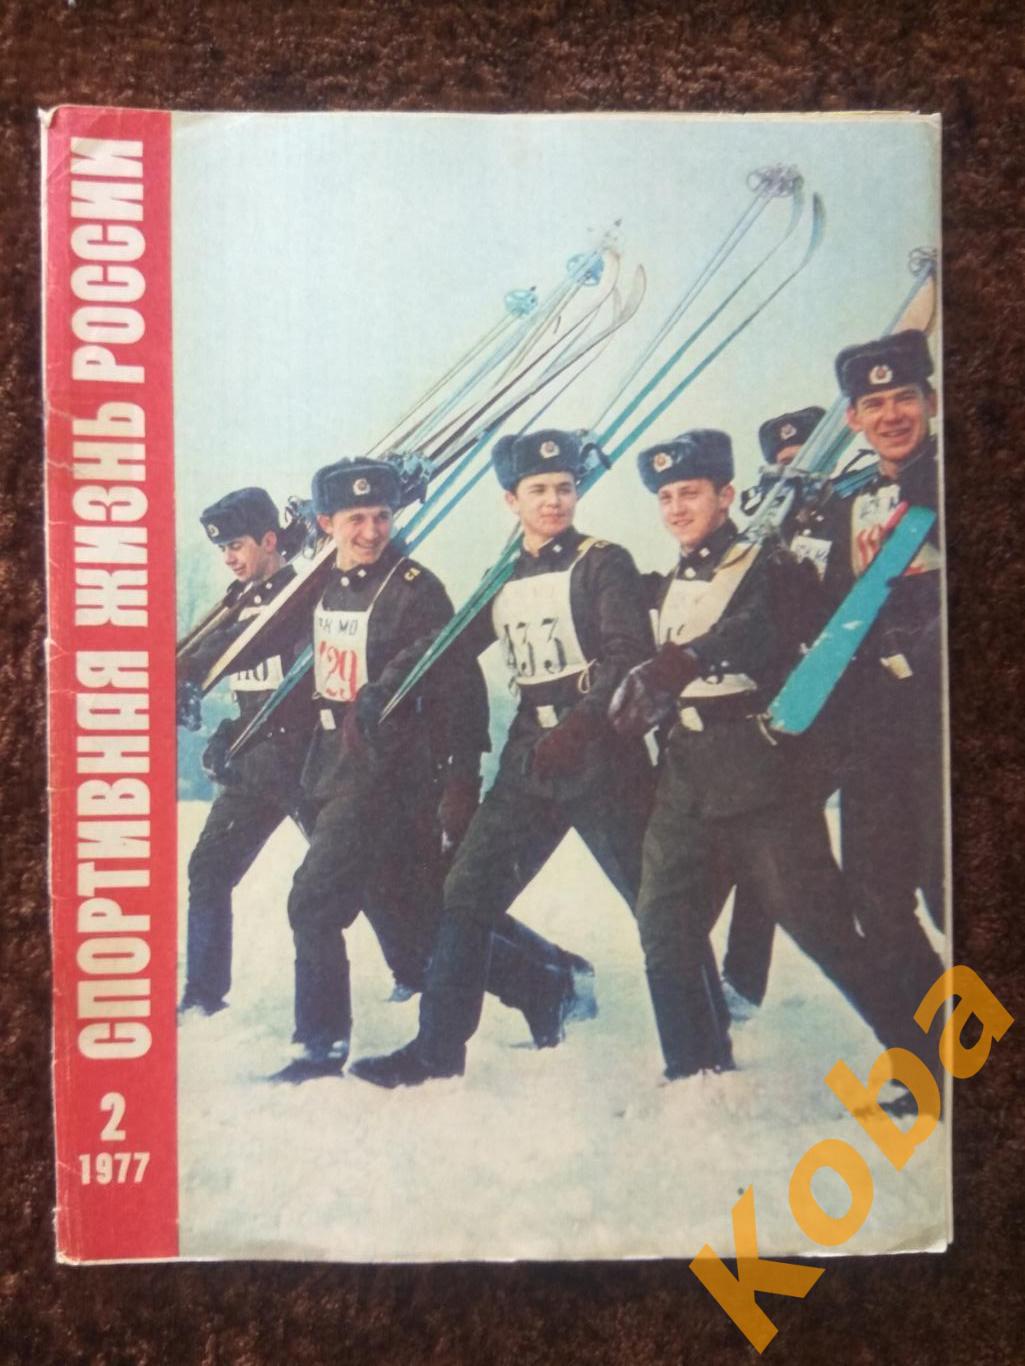 Борьба Стрельба Фигурное катание Гиревой спорт Спортивная жизнь России 1977 №2